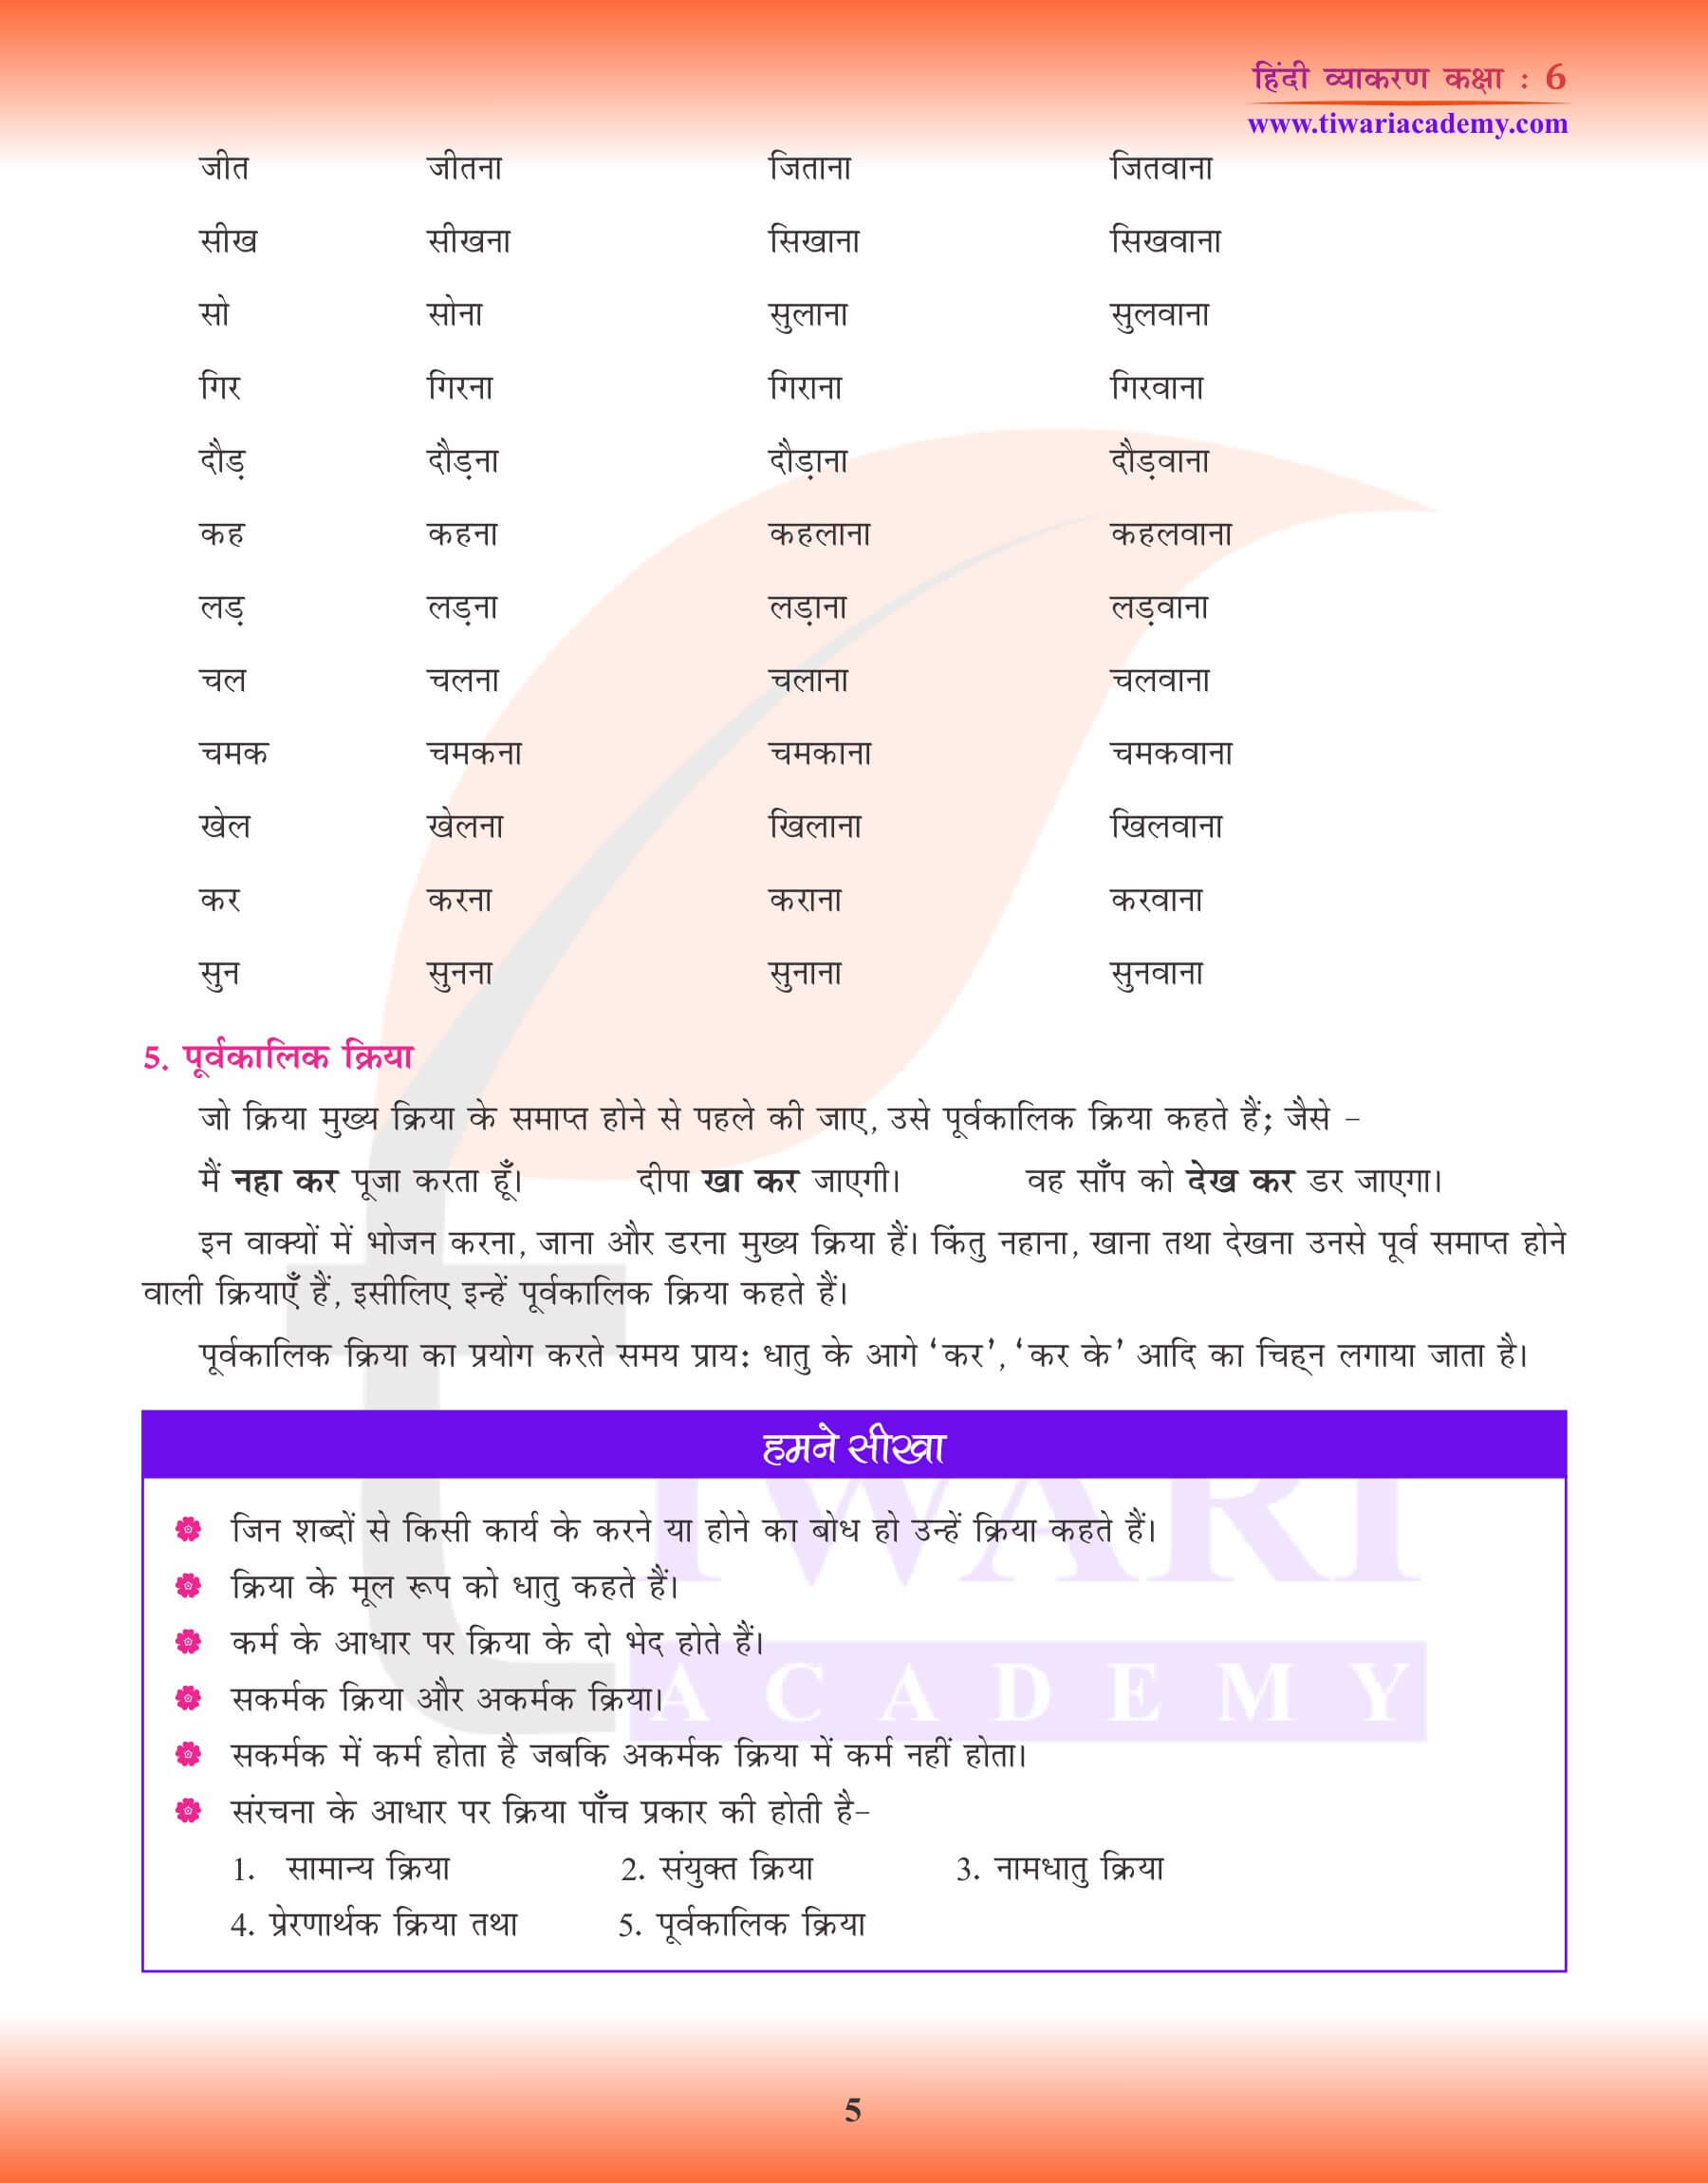 कक्षा 6 हिंदी व्याकरण पाठ 11 क्रिया के लिए अभ्यास